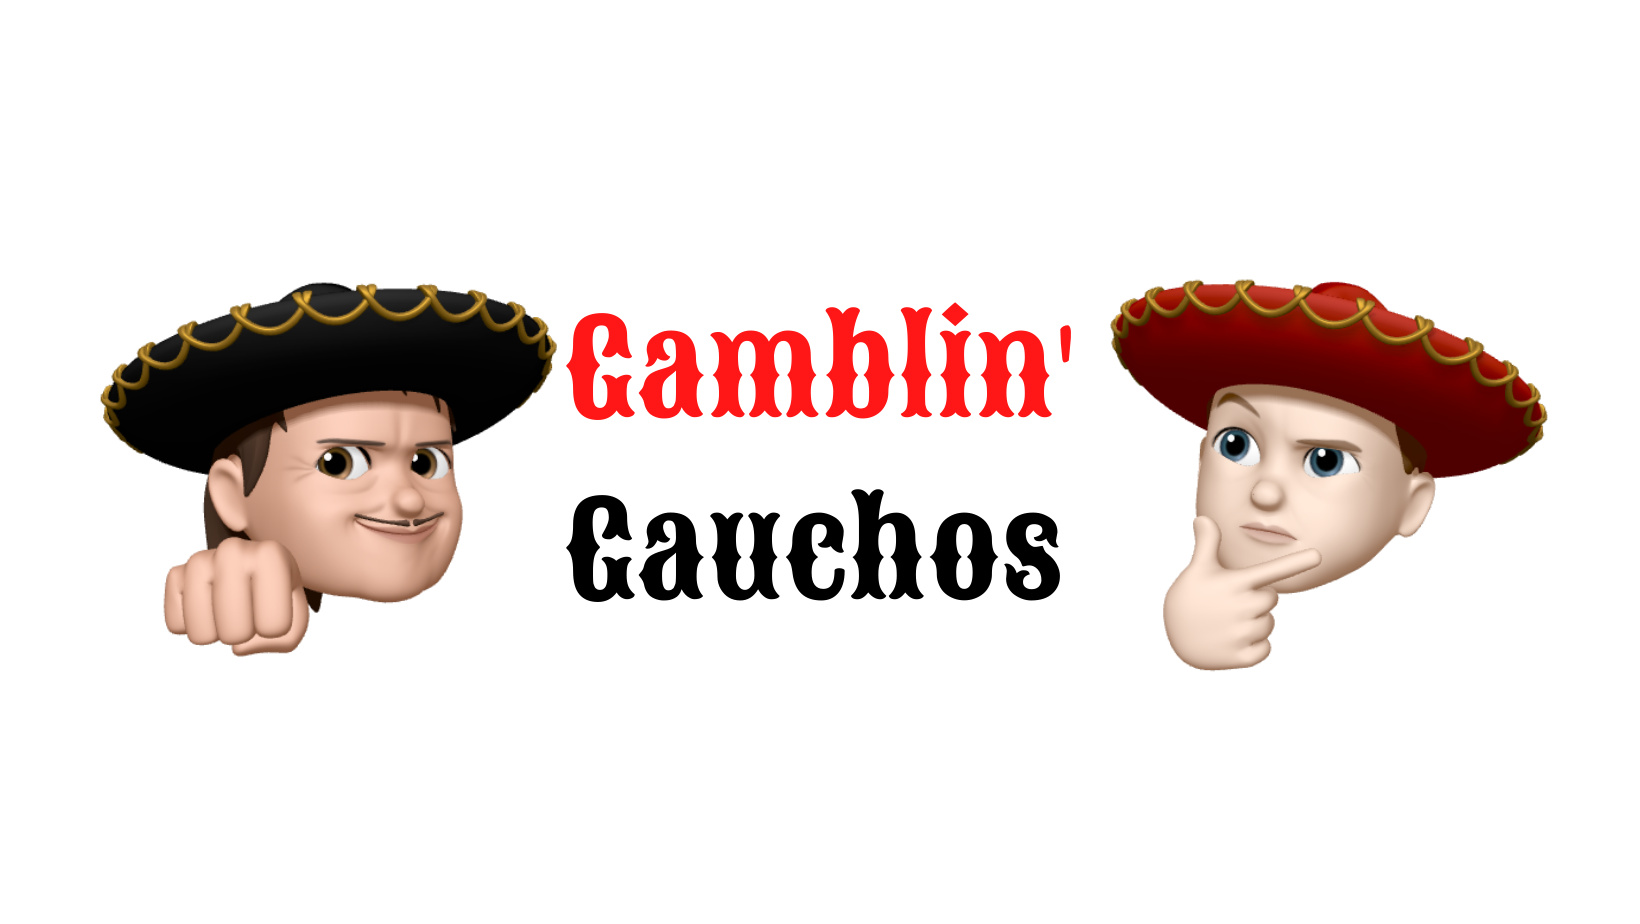 Gamblin’ Gauchos Podcast: S1 E2